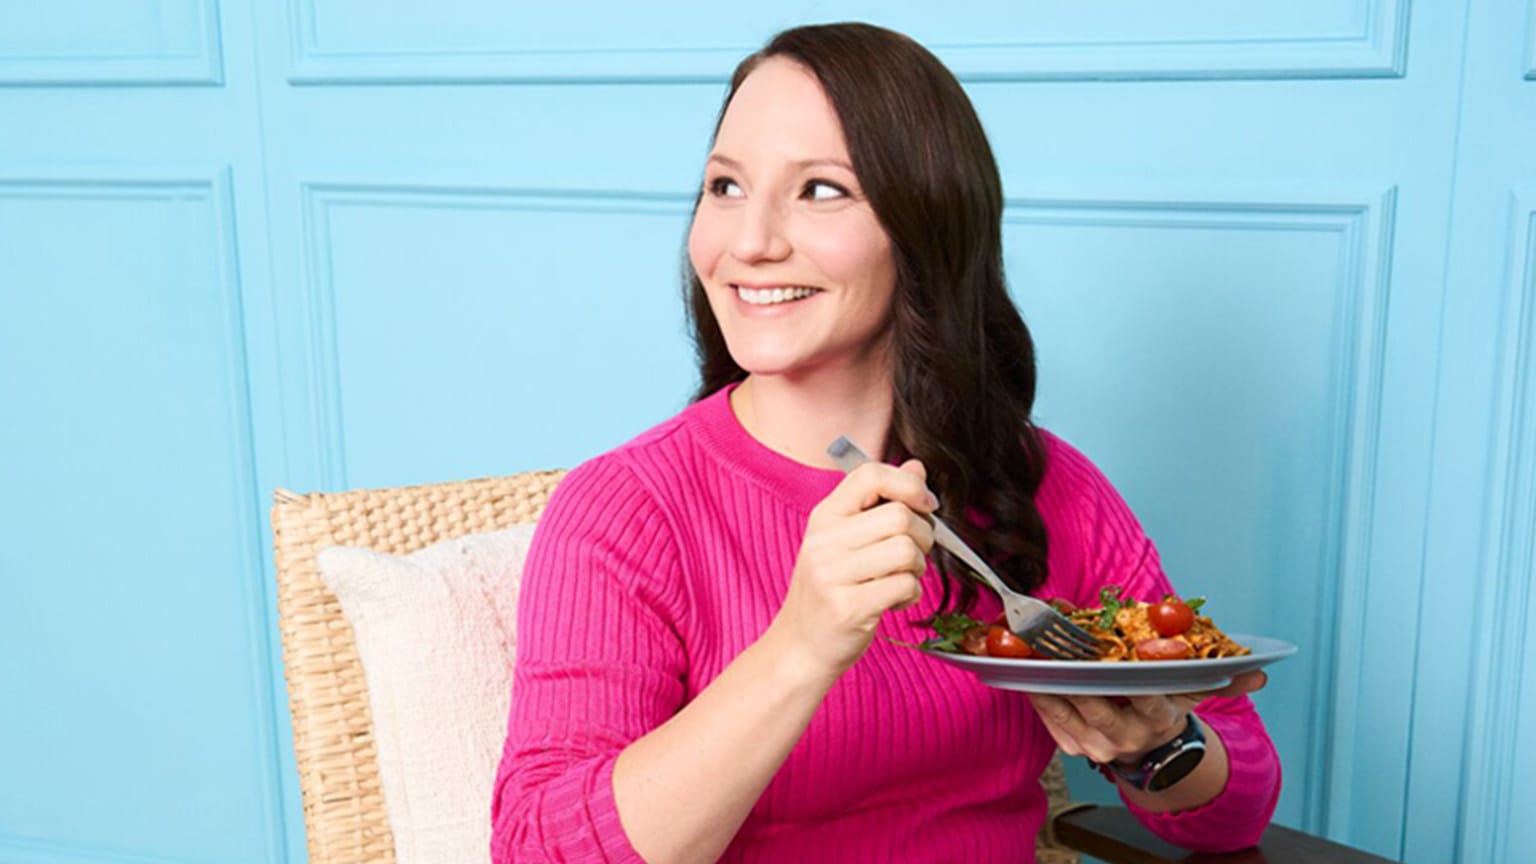 Junge Frau mit braunen Haaren und pinkem Pullover sitzt mit Pastateller vor blauer Wand.